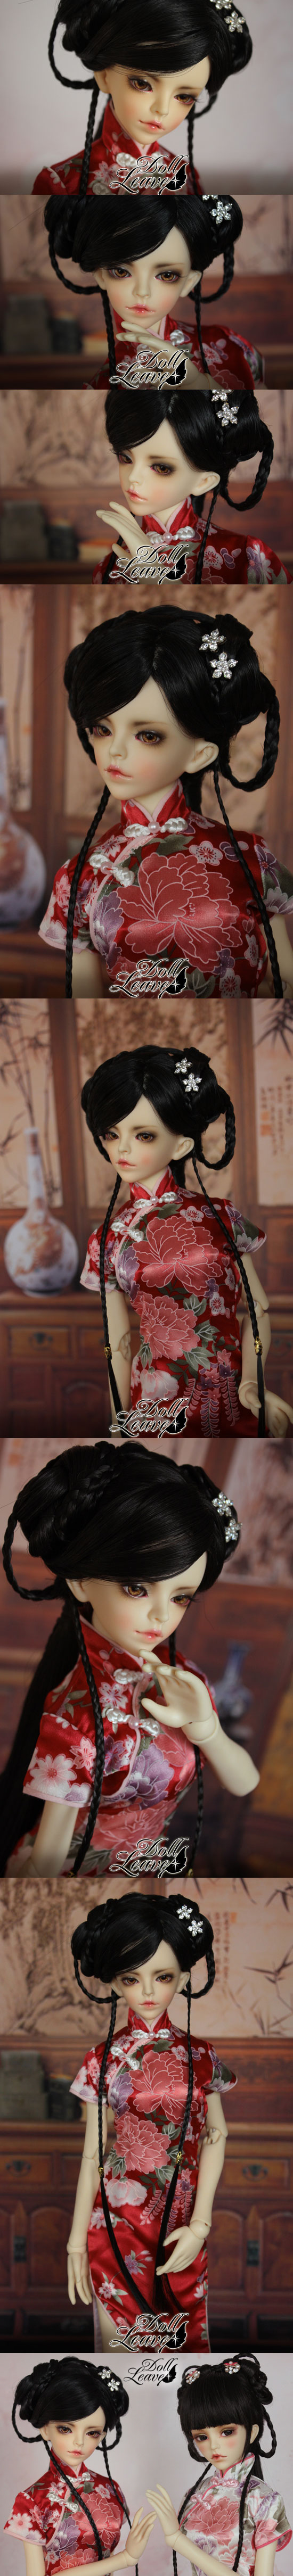 BJD Rose Girl 58cm Boll-jointed doll